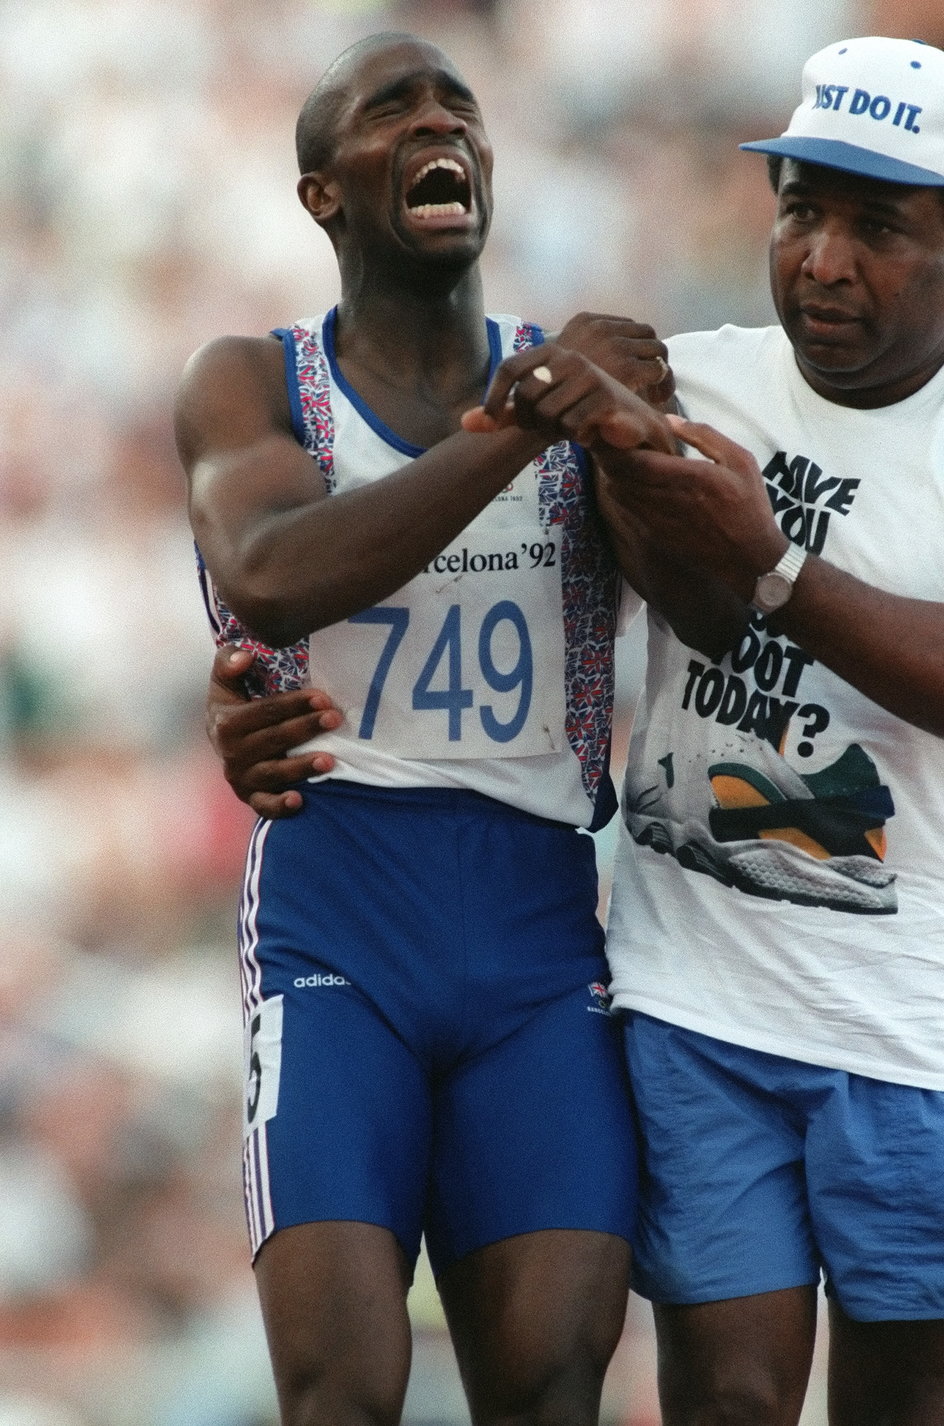 Derek Redmond miał pecha do igrzysk olimpijskich. Sukcesy odnosił tylko na mistrzostwach Europy (złoto w sztafecie 4x400 m) i świata (złoto i srebro w sztafecie 4x400 m)